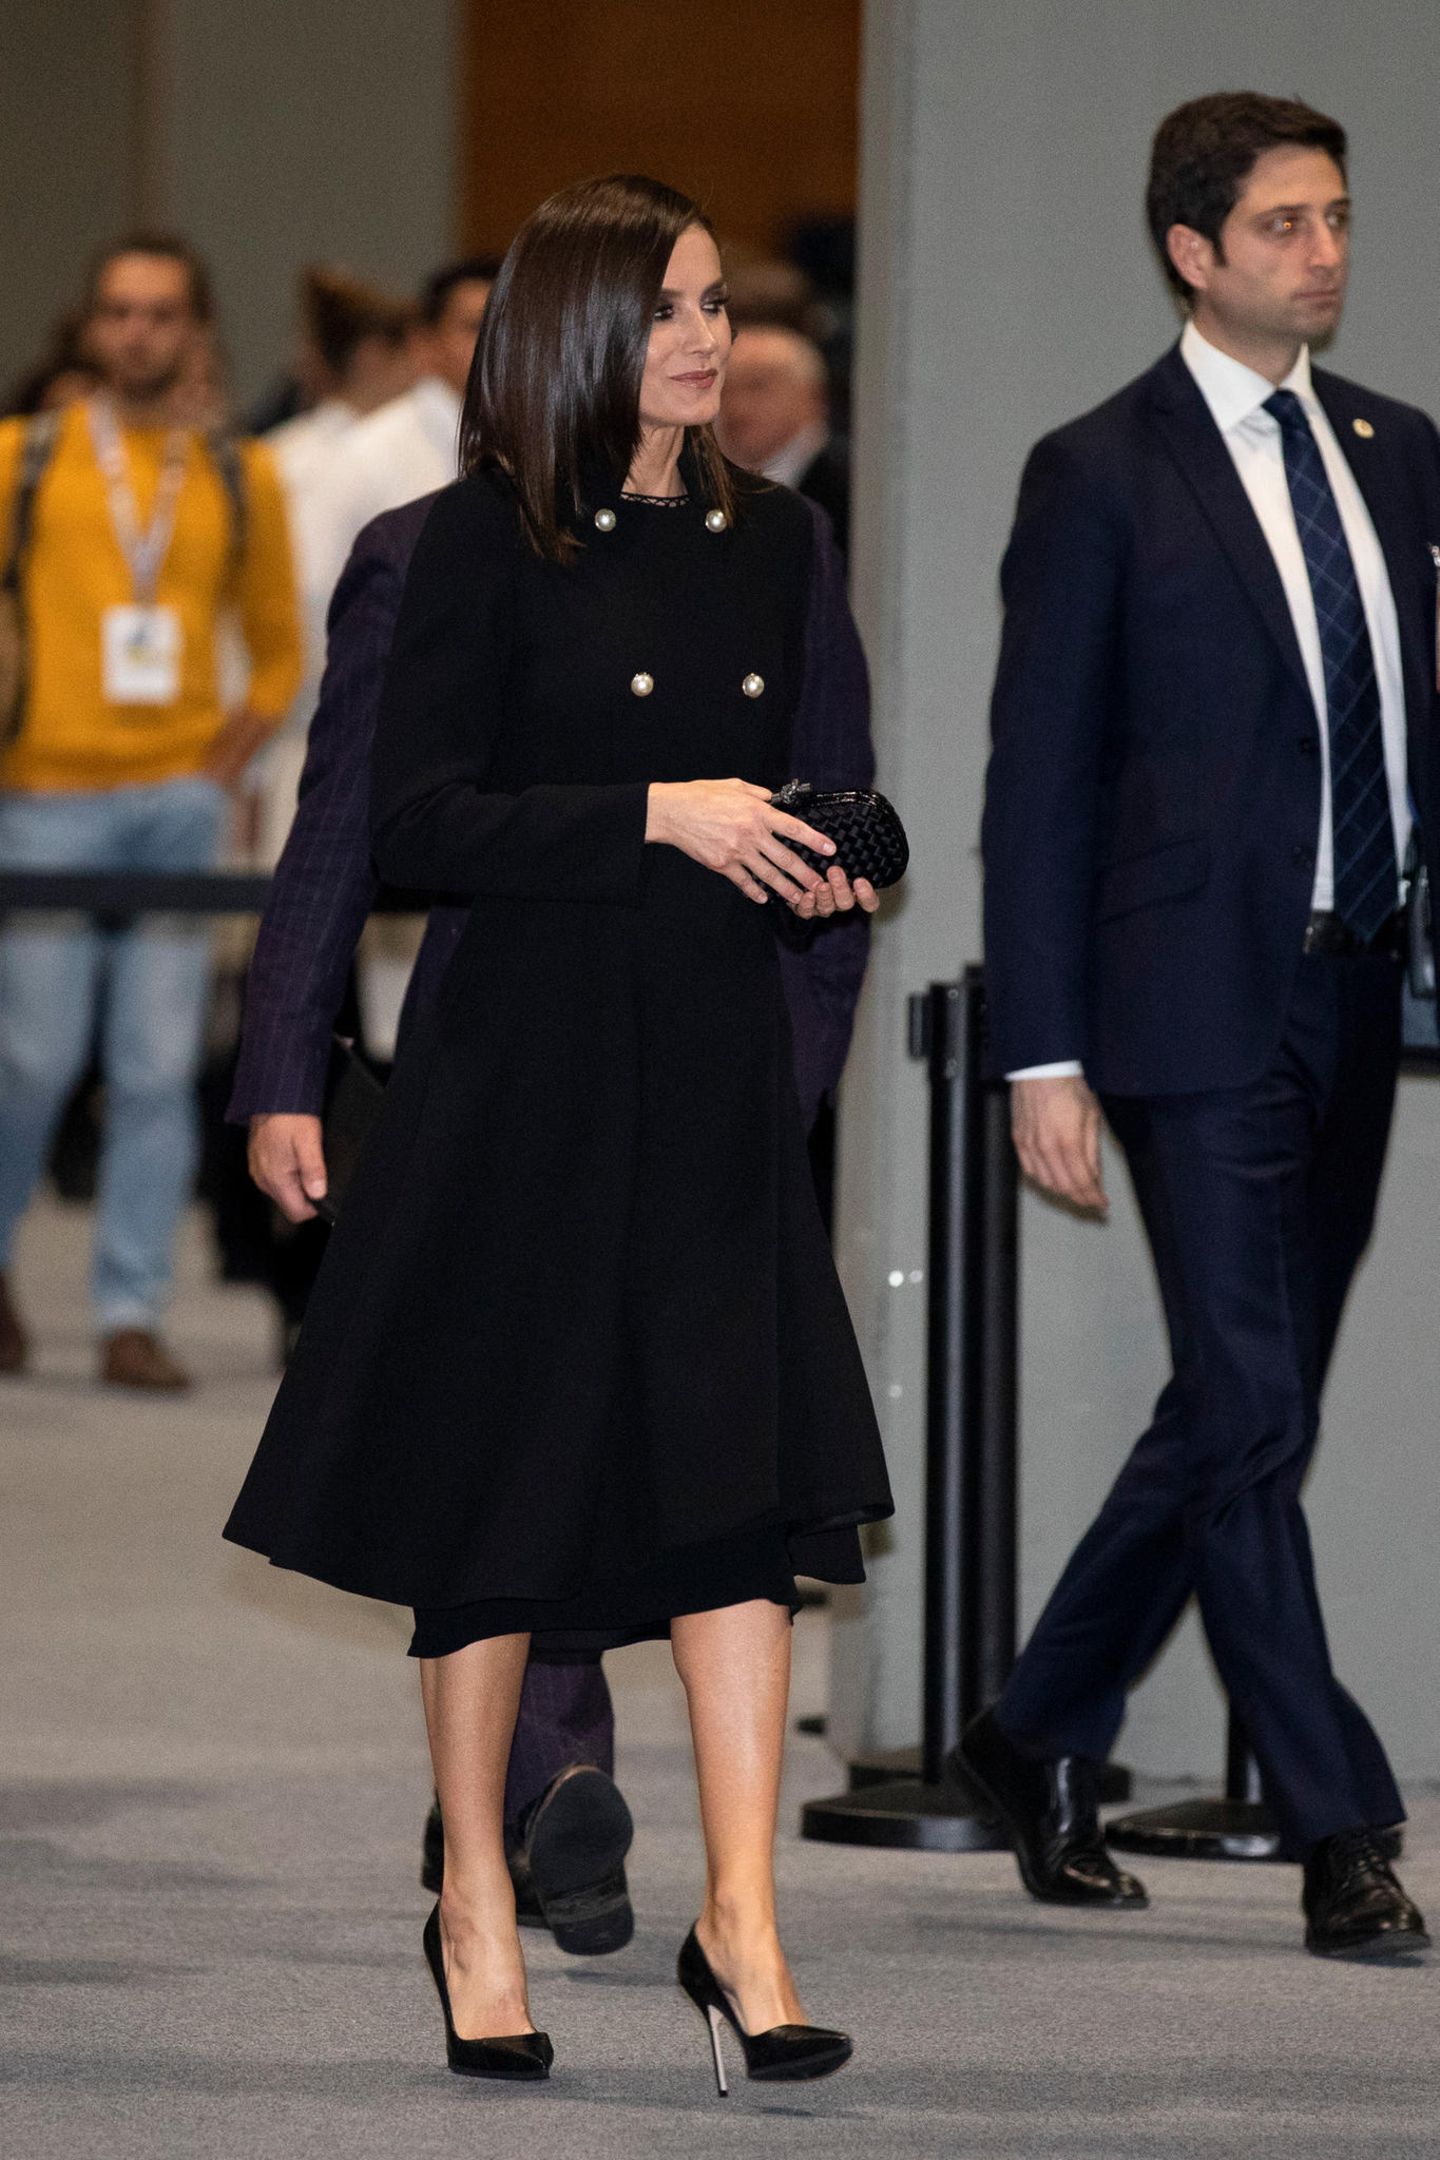 Zwei Auftritte, ein Look – und doch ganz verschieden! Bei einem Klima-Gipfel in Madrid zeigte sich Königin Letizia zunächst noch in einem eleganten Look, bestehend aus einem schwarzen Mantel mit Perlenknöpfen. Diesen legte sie nur wenige Stunden später allerdings ab und präsentierte darunter ...